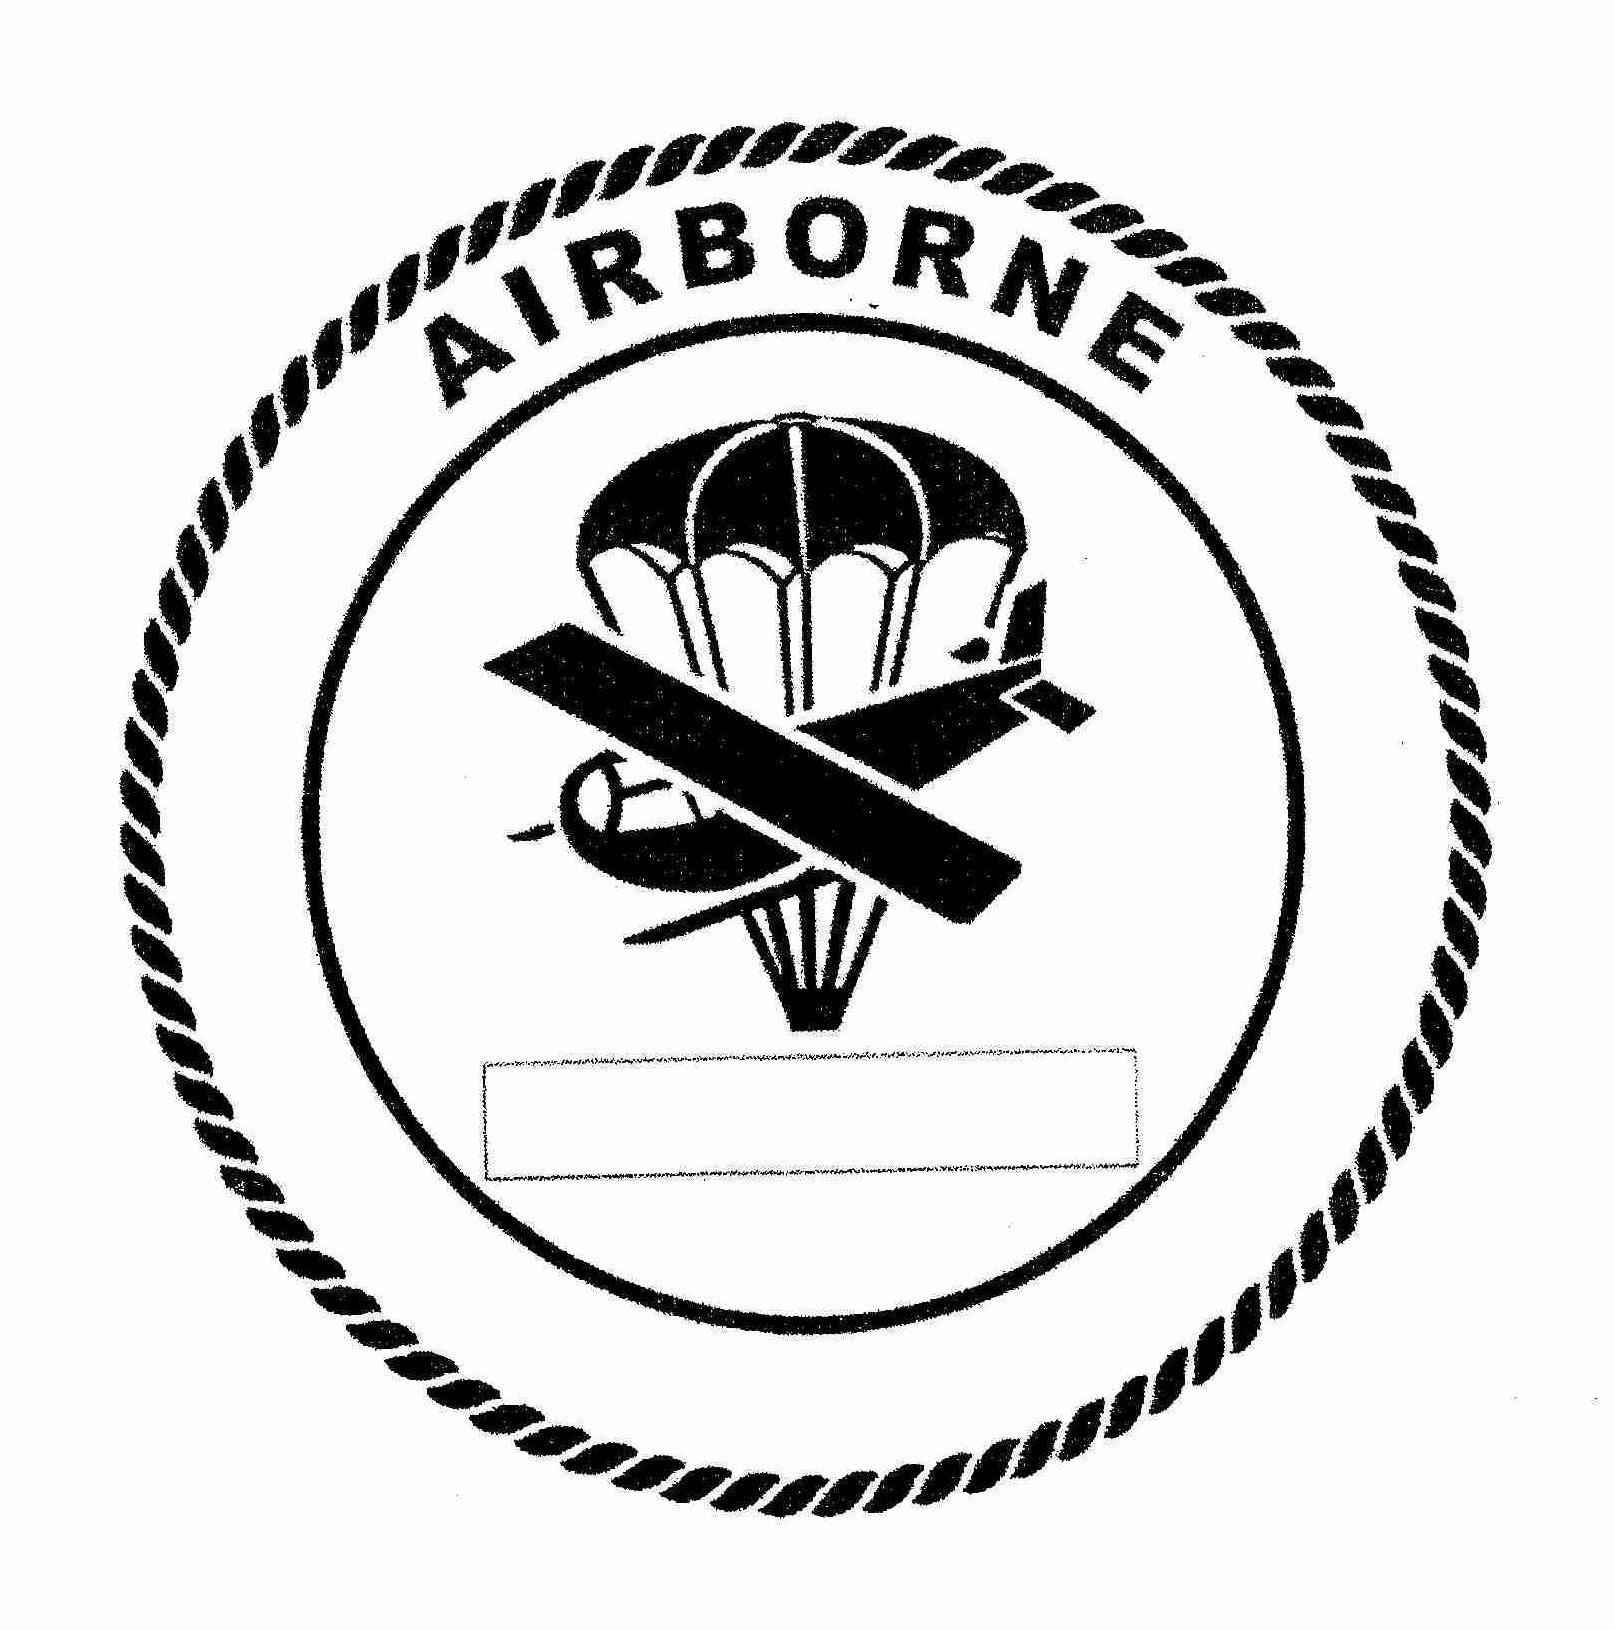 AIRBORNE